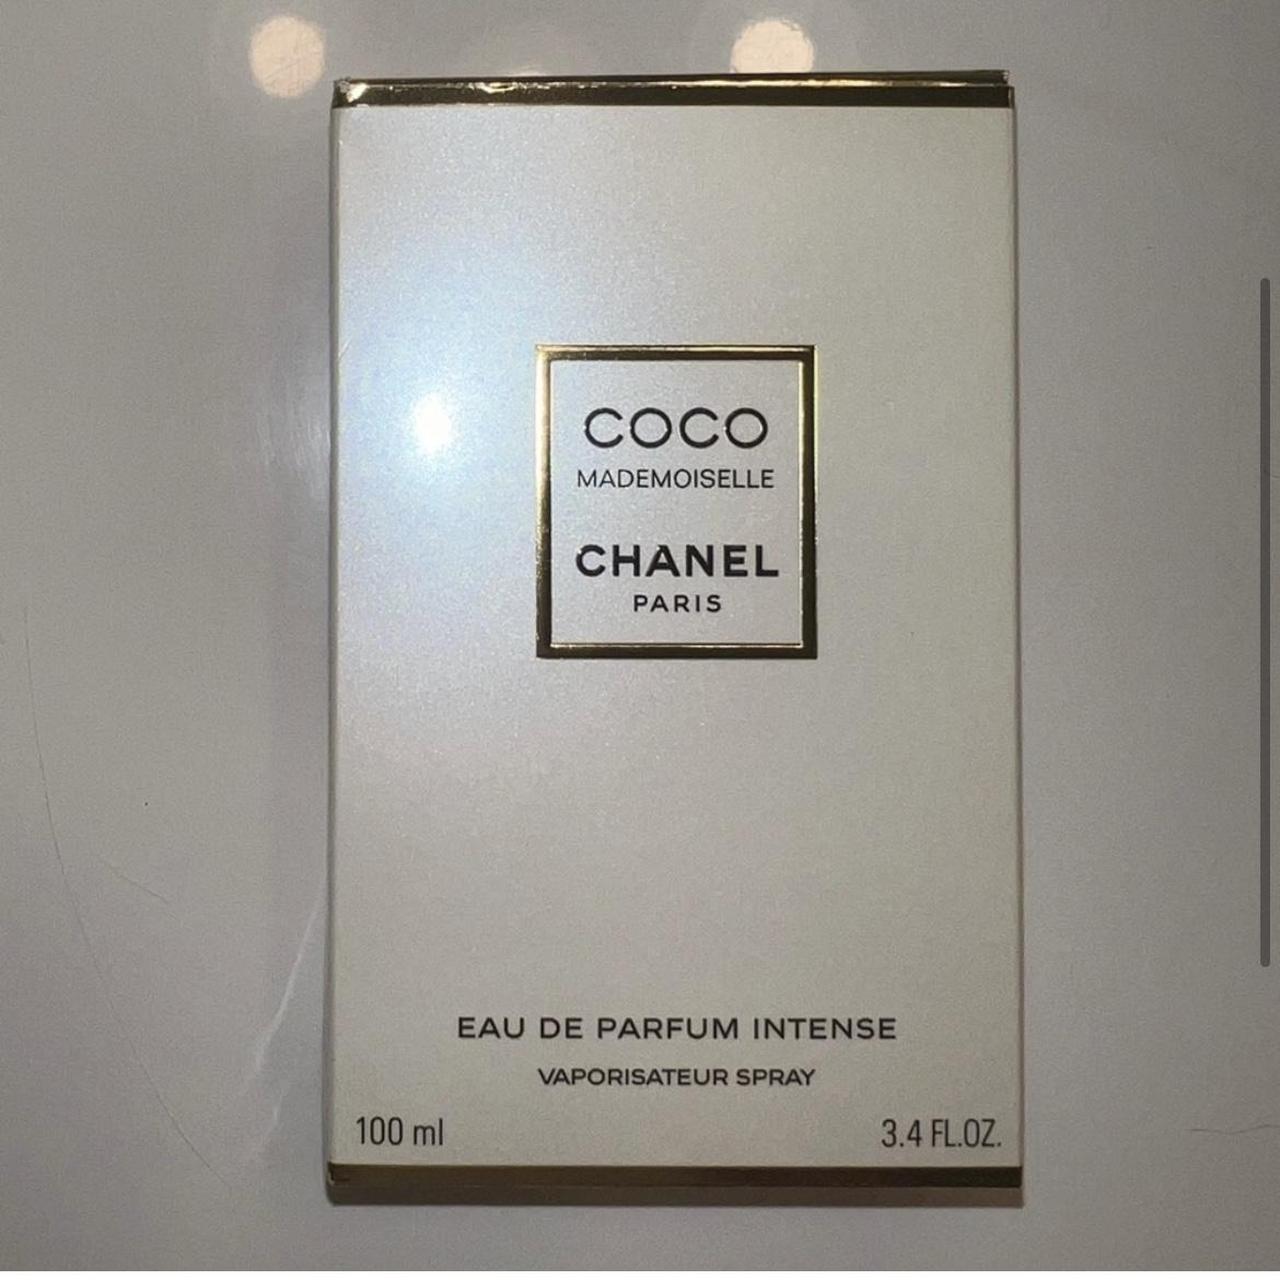 Coco Mademoiselle Eau de Parfum Intense 3.4 fl oz, - Depop